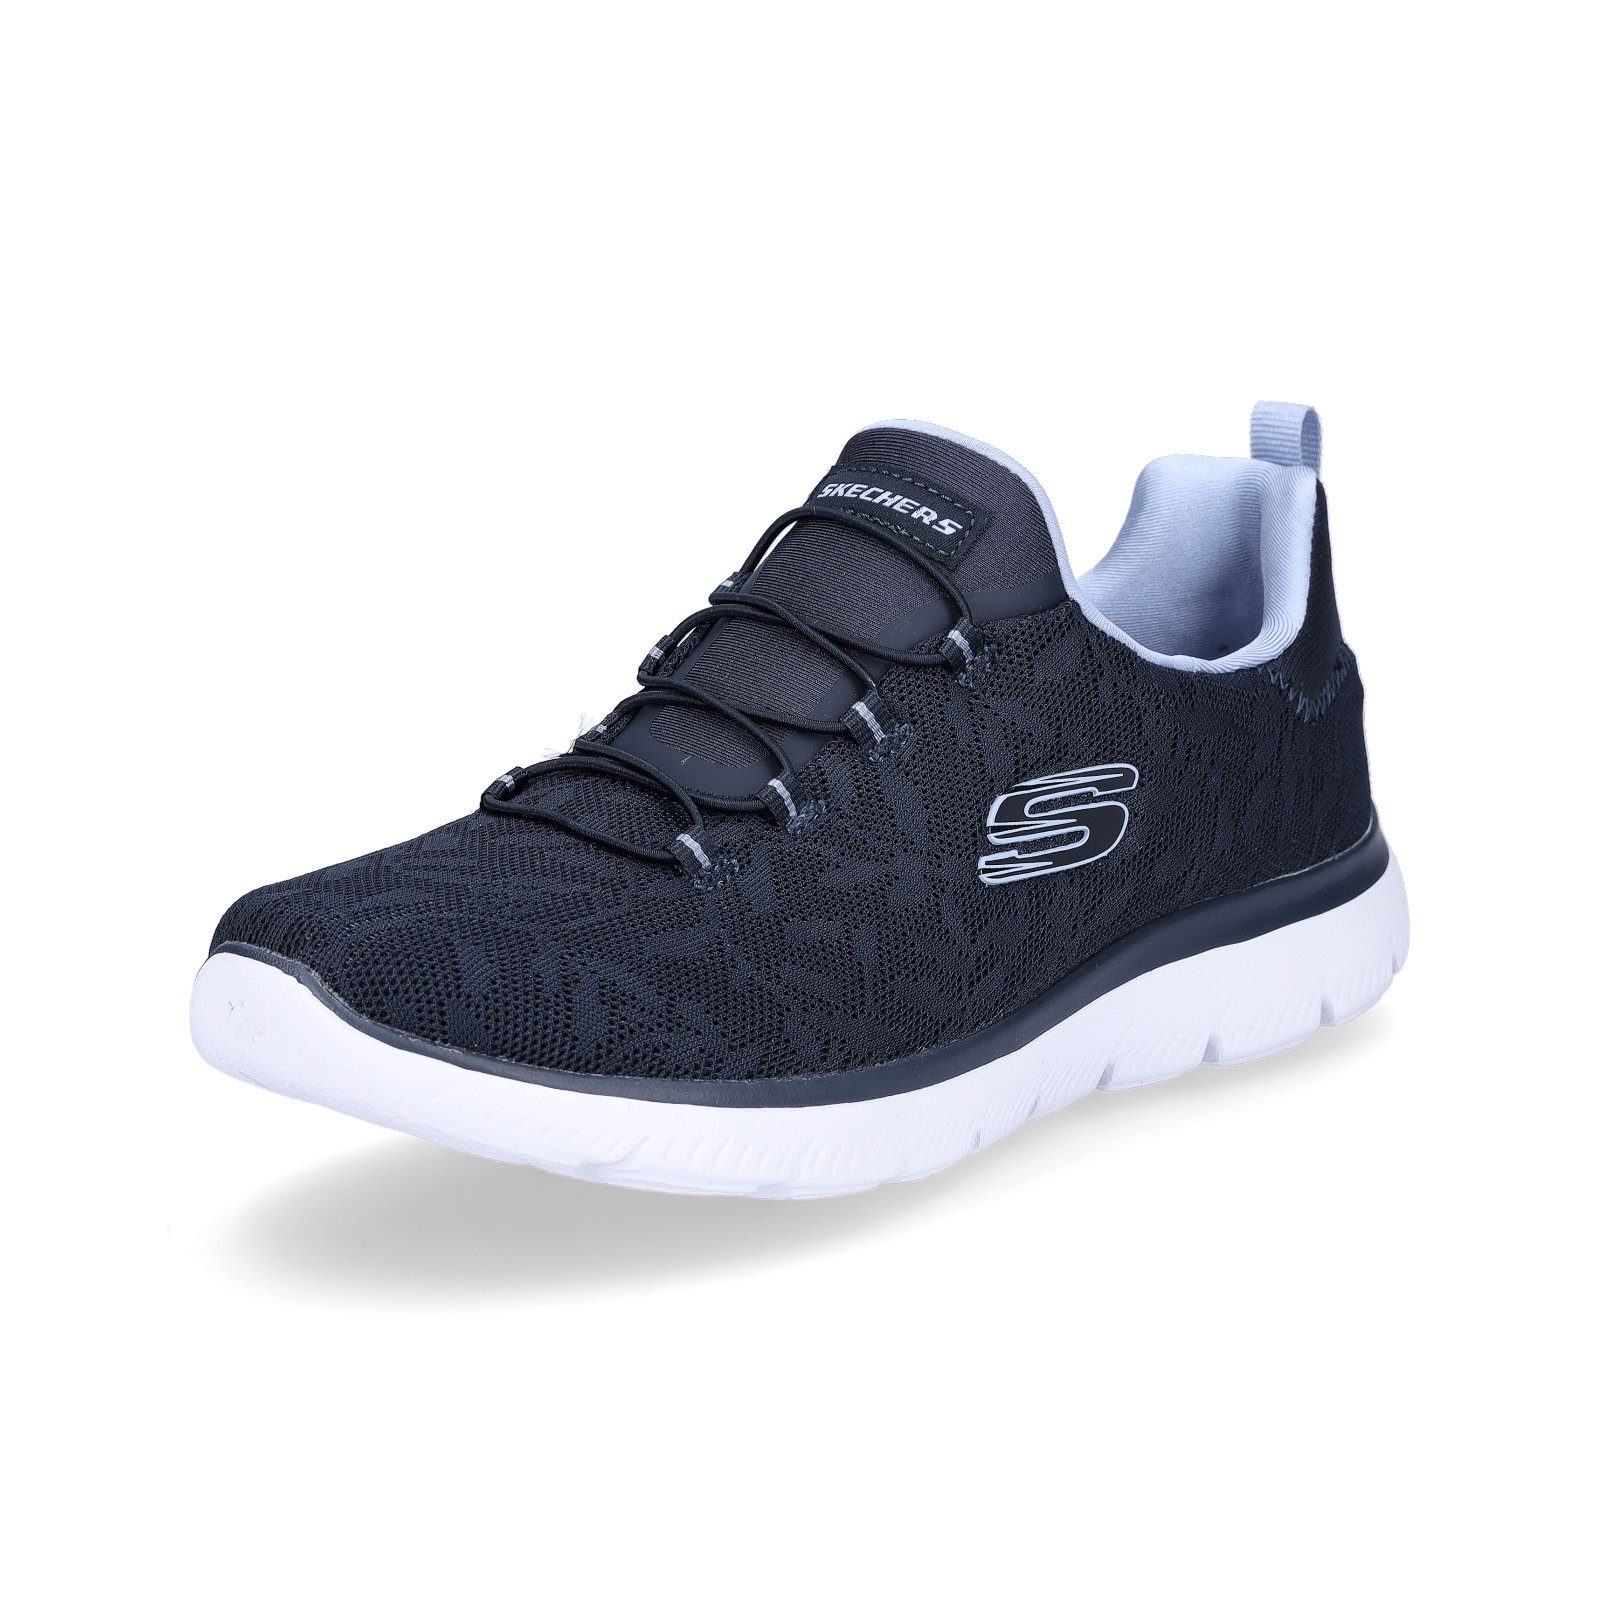 Skechers Skechers Damen Sneaker Summits marine blau Sneaker navy blue (20203042)